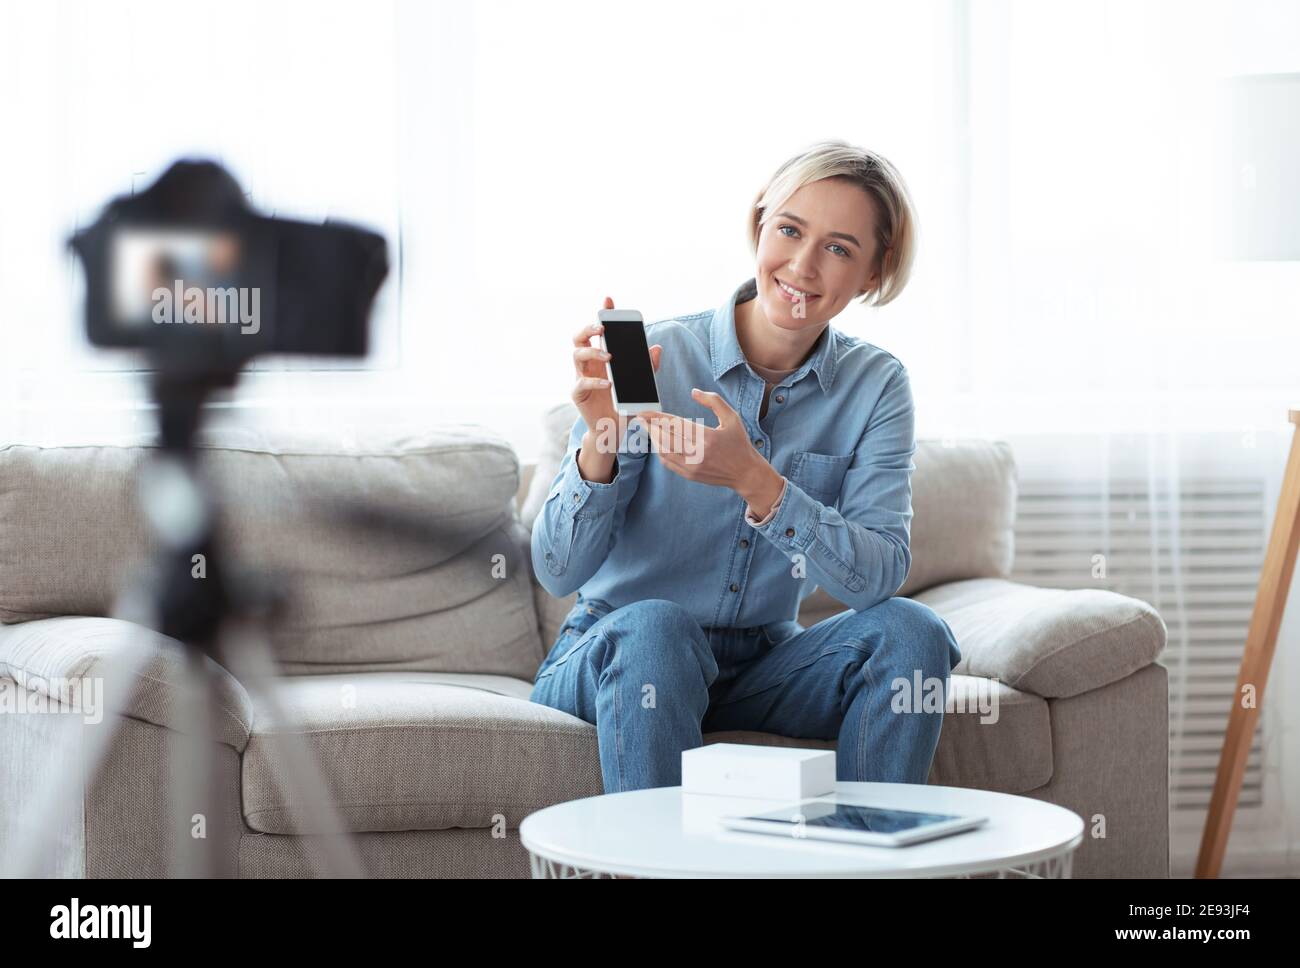 Vlogger femme millénaire qui passe en revue le nouveau modèle de smartphone à l'aide d'un appareil photo reflex numérique professionnel à la maison Banque D'Images